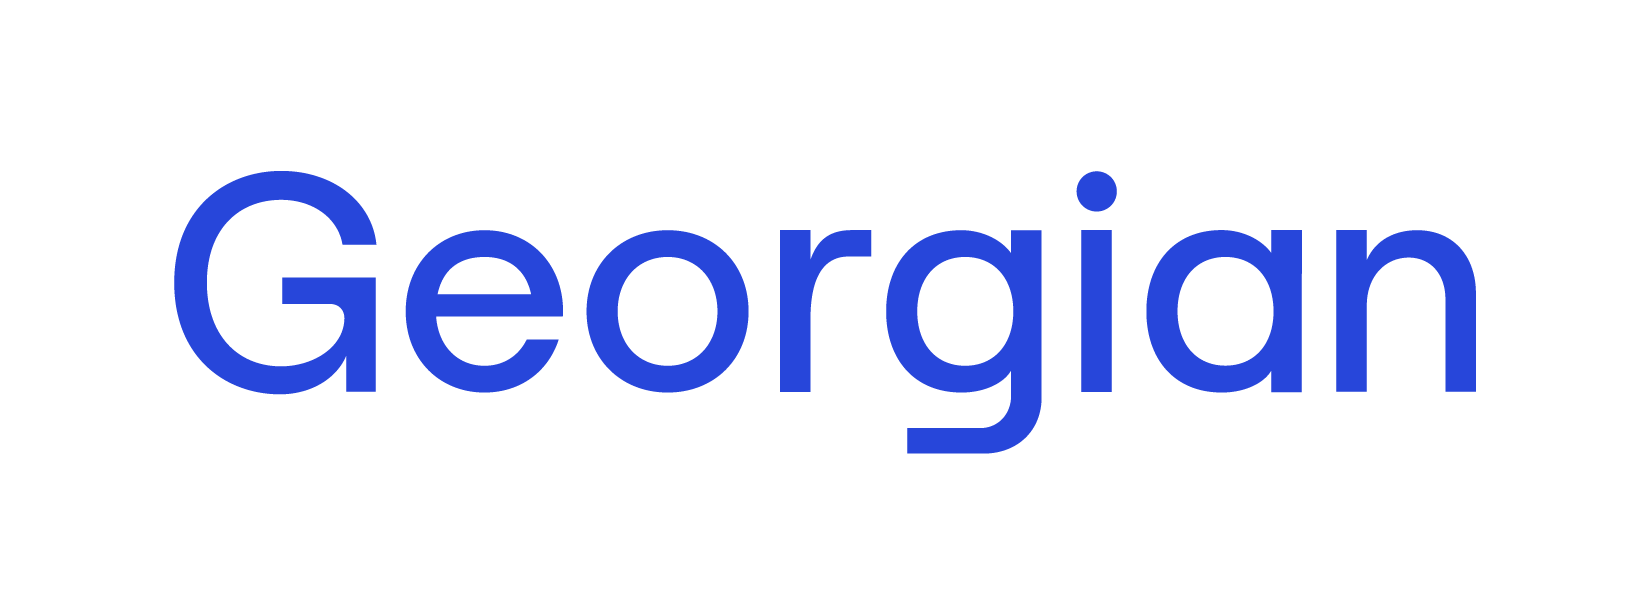 35m Series Georgian Capital Partners